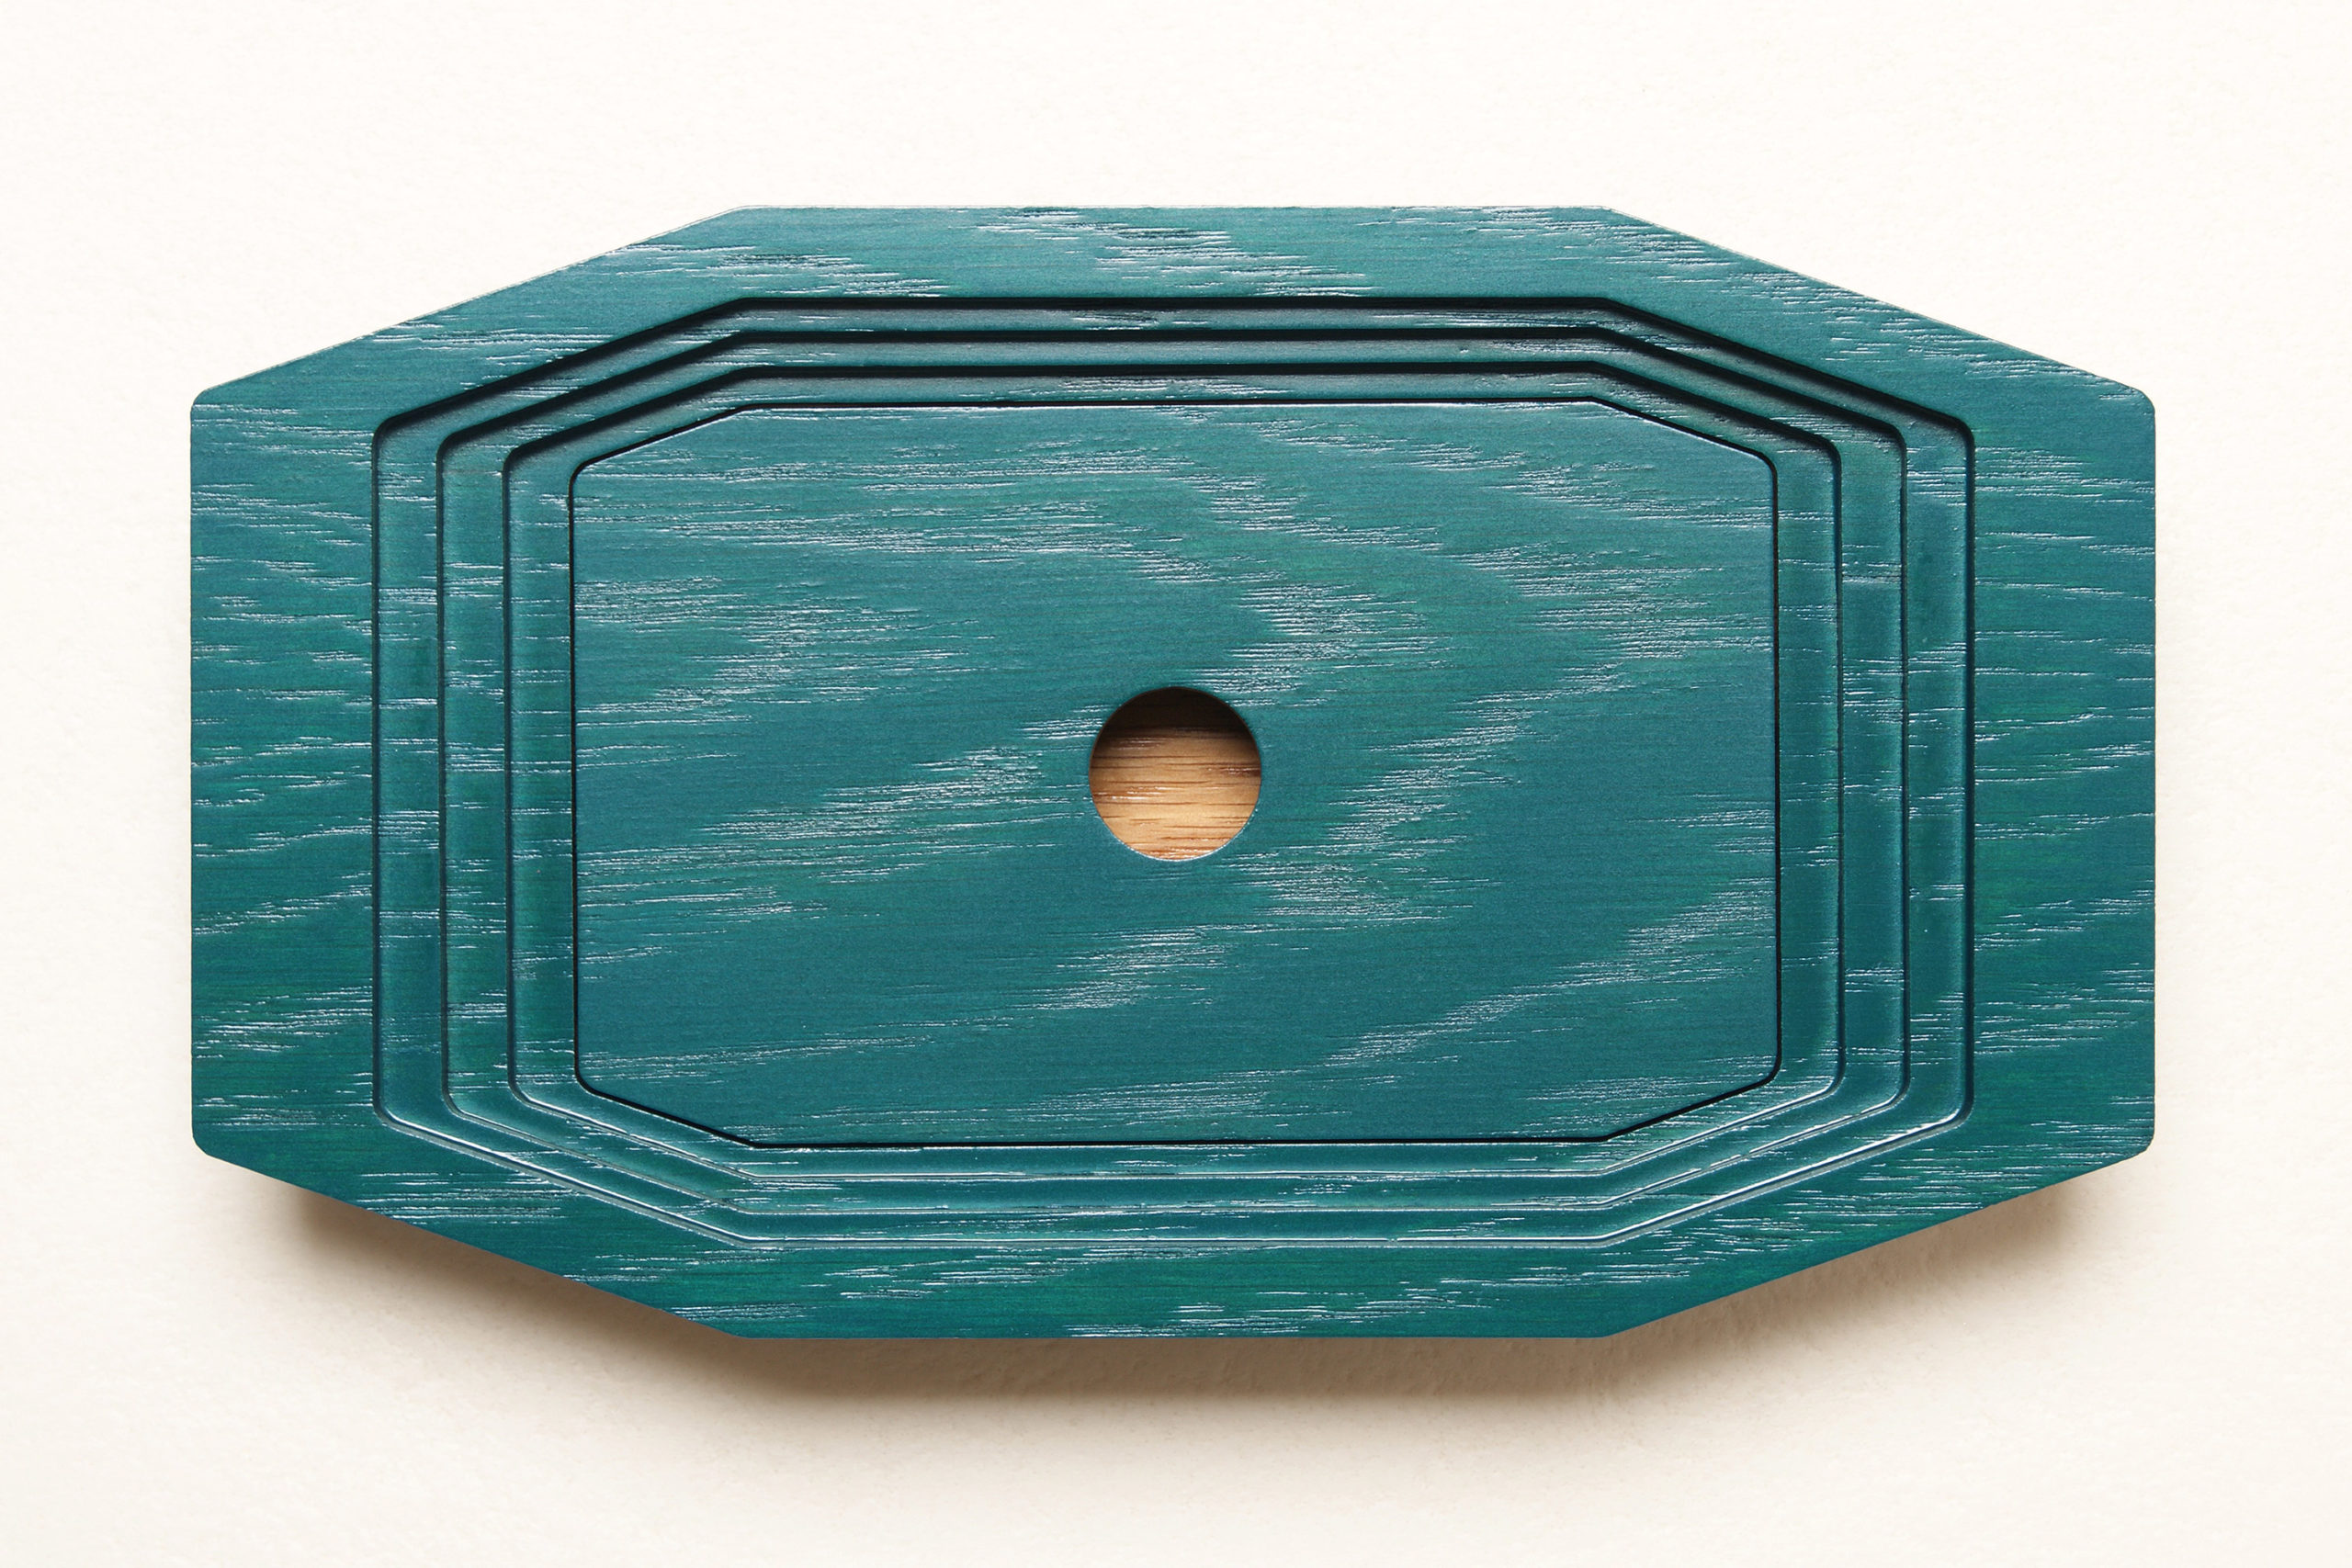 Boîte en Chêne bicolore, façonnée par strates successives avec son couvercle intermédiaire.